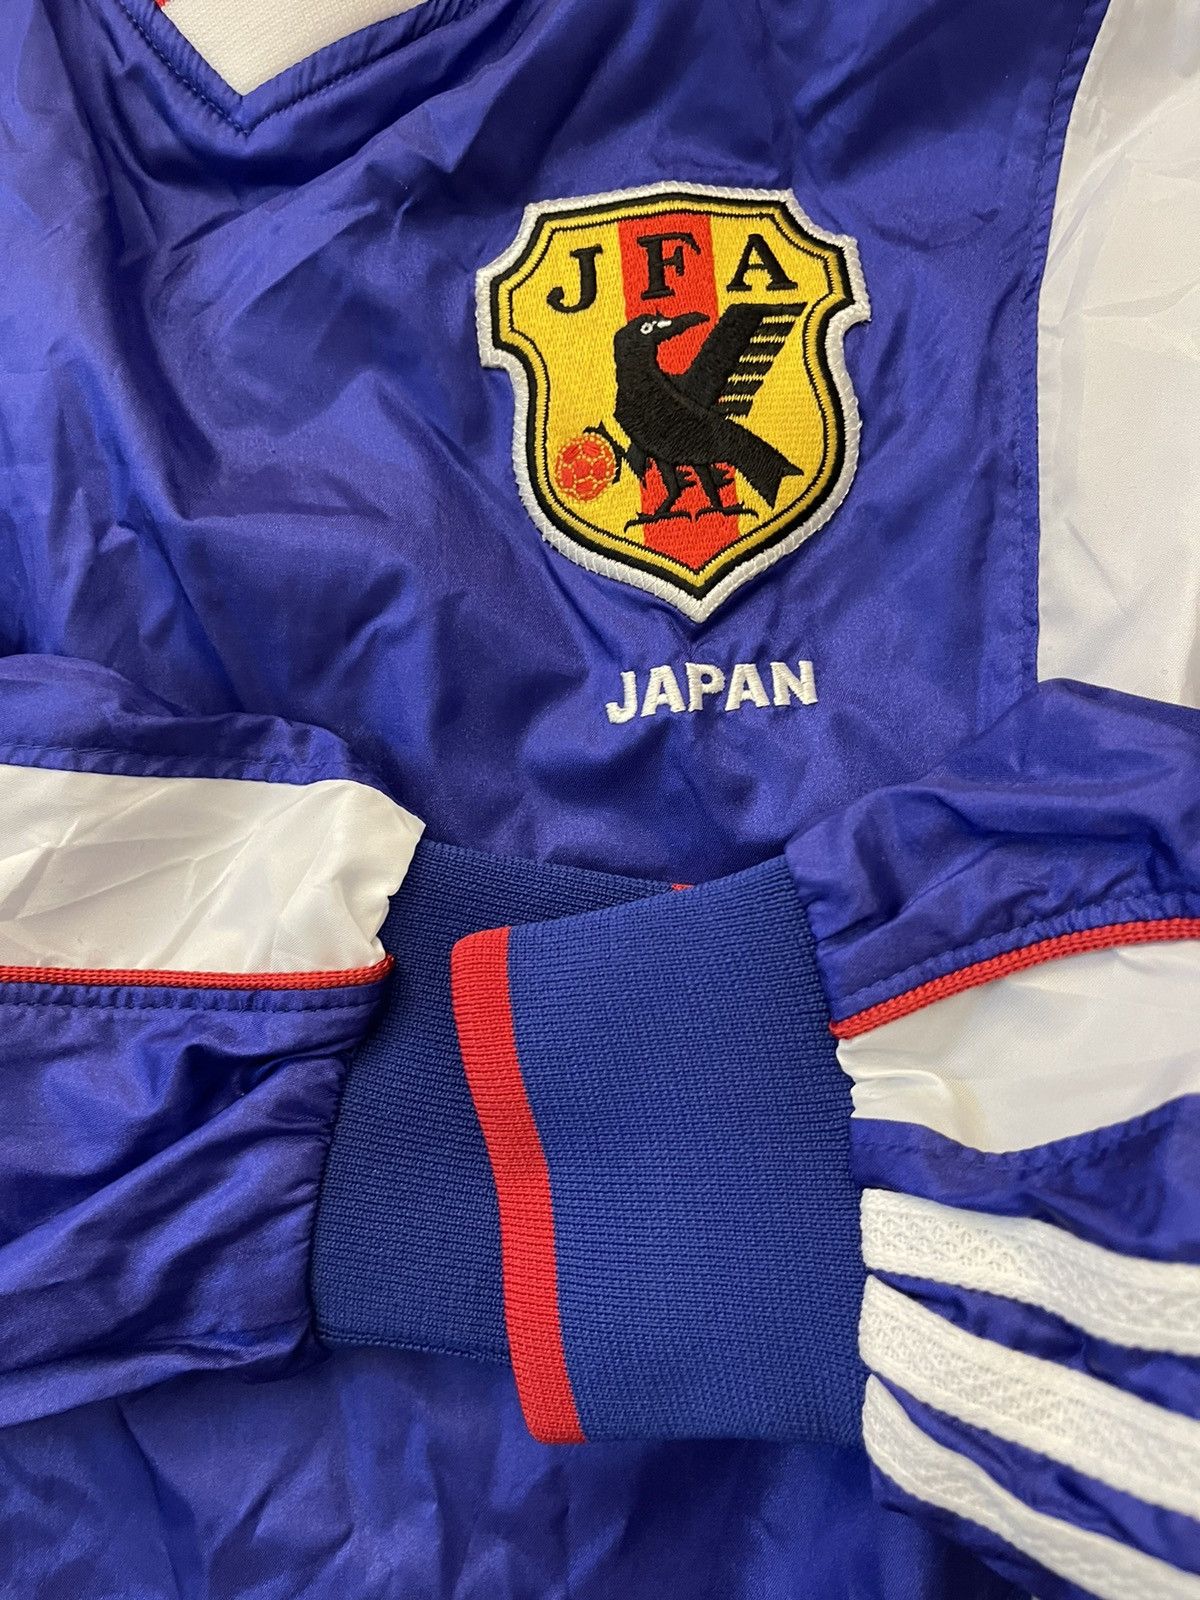 Japan Home Adidas Vintage Long Sleeve Football Training - 4